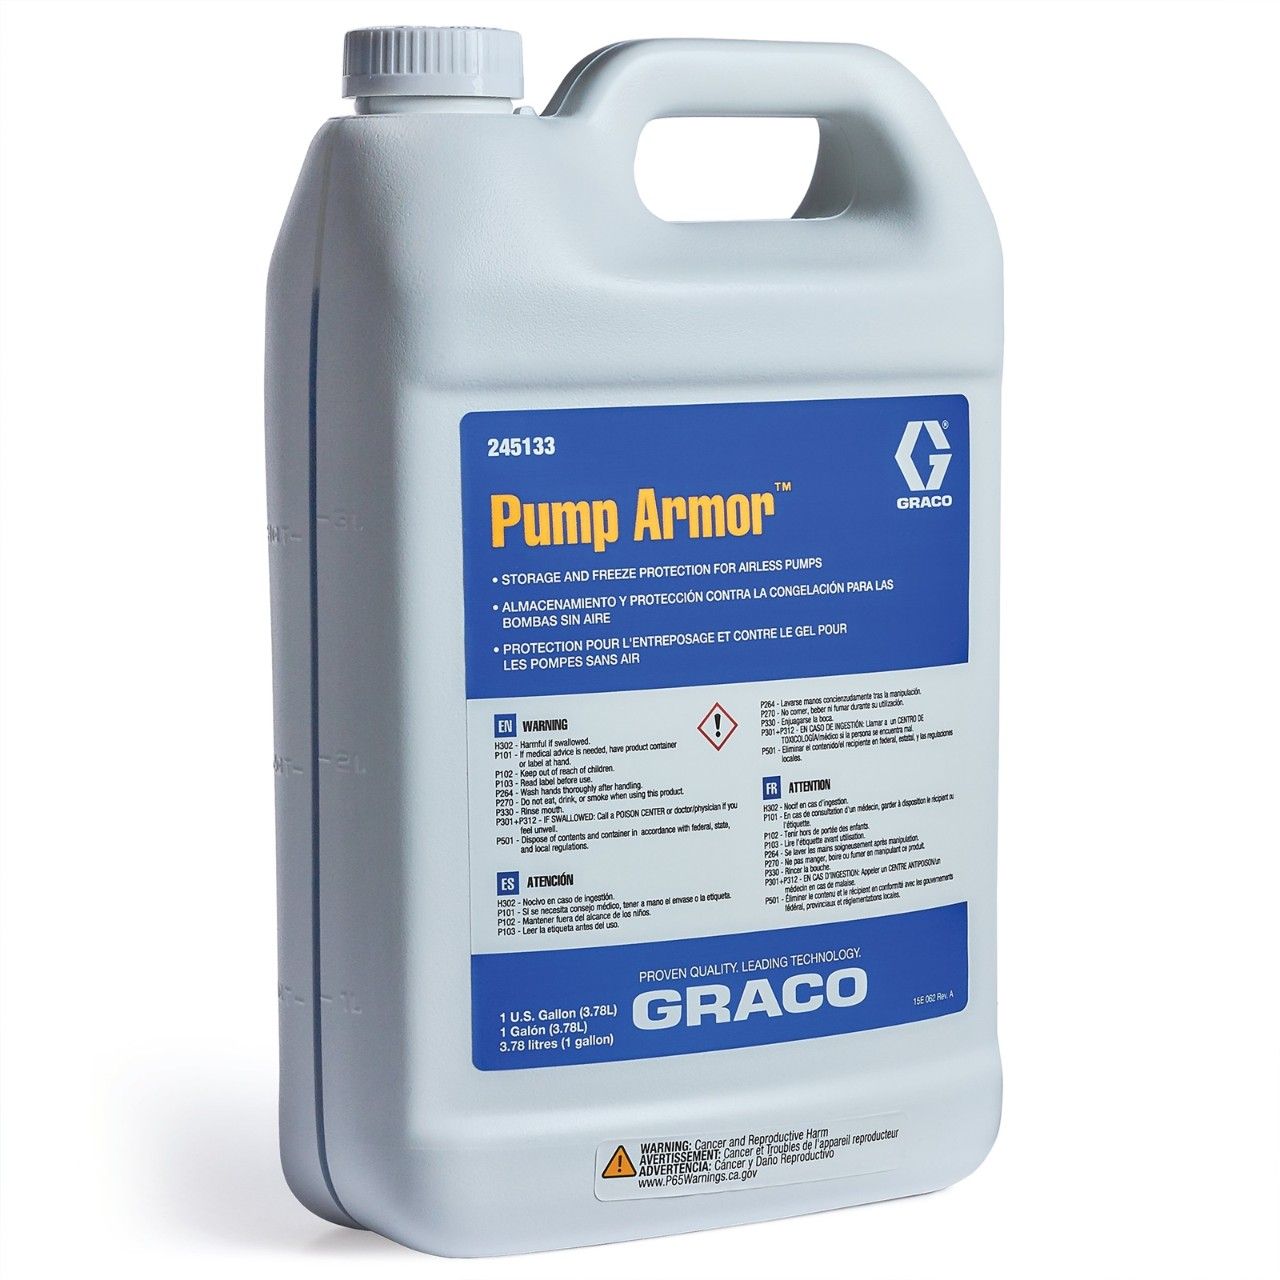 GRACO Orginal Pumpe Armor Liquid, 3.8 L - 245133